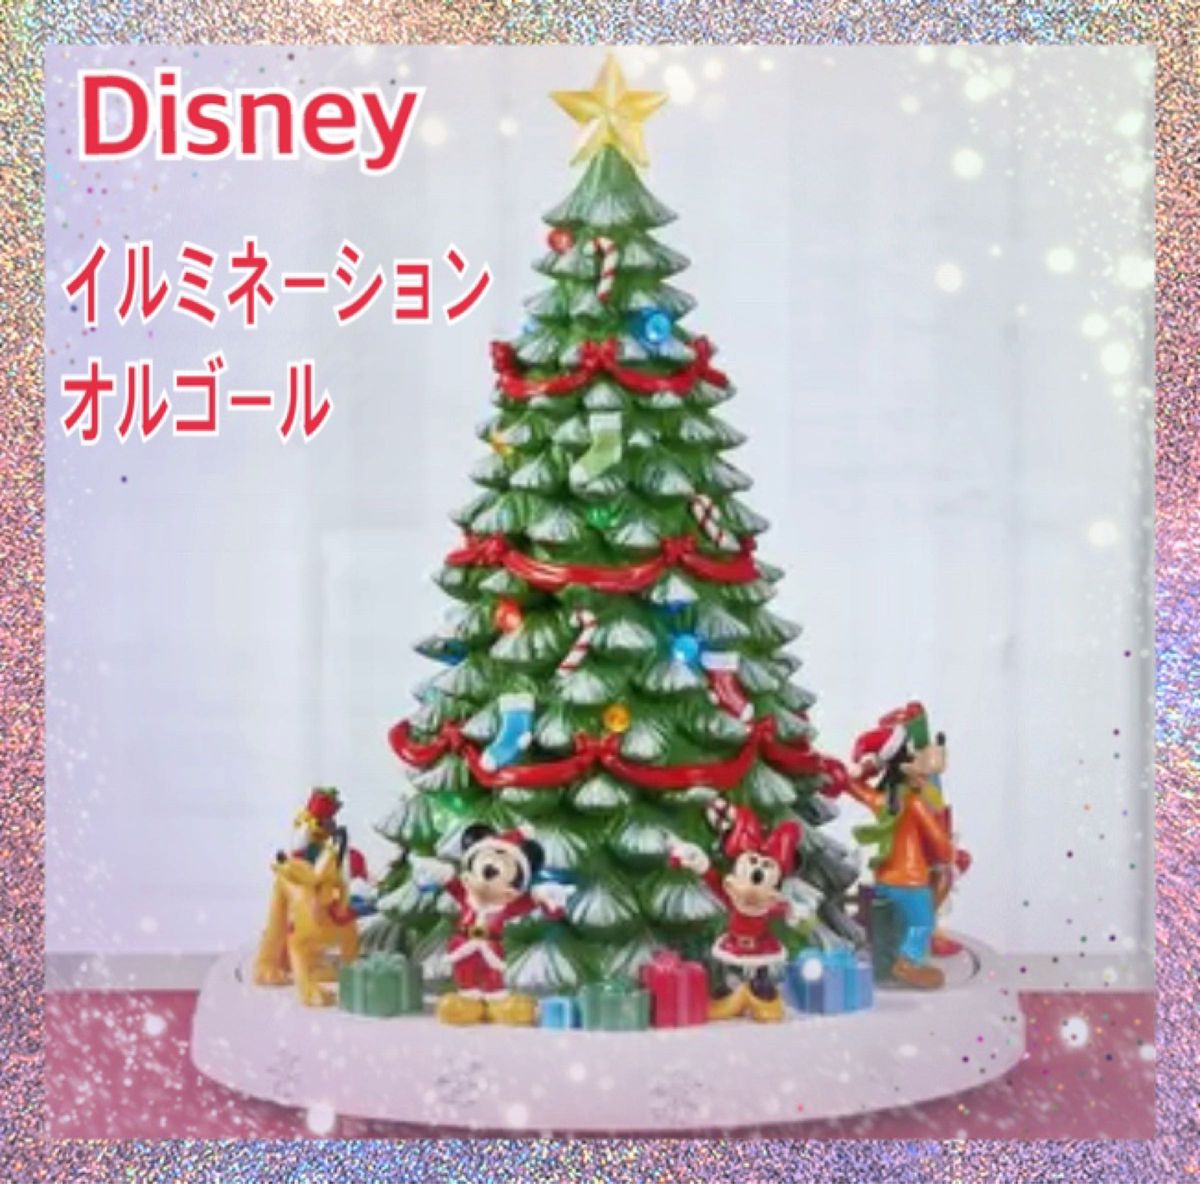 新品 クリスマスツリー ディズニー イルミネーション オルゴール